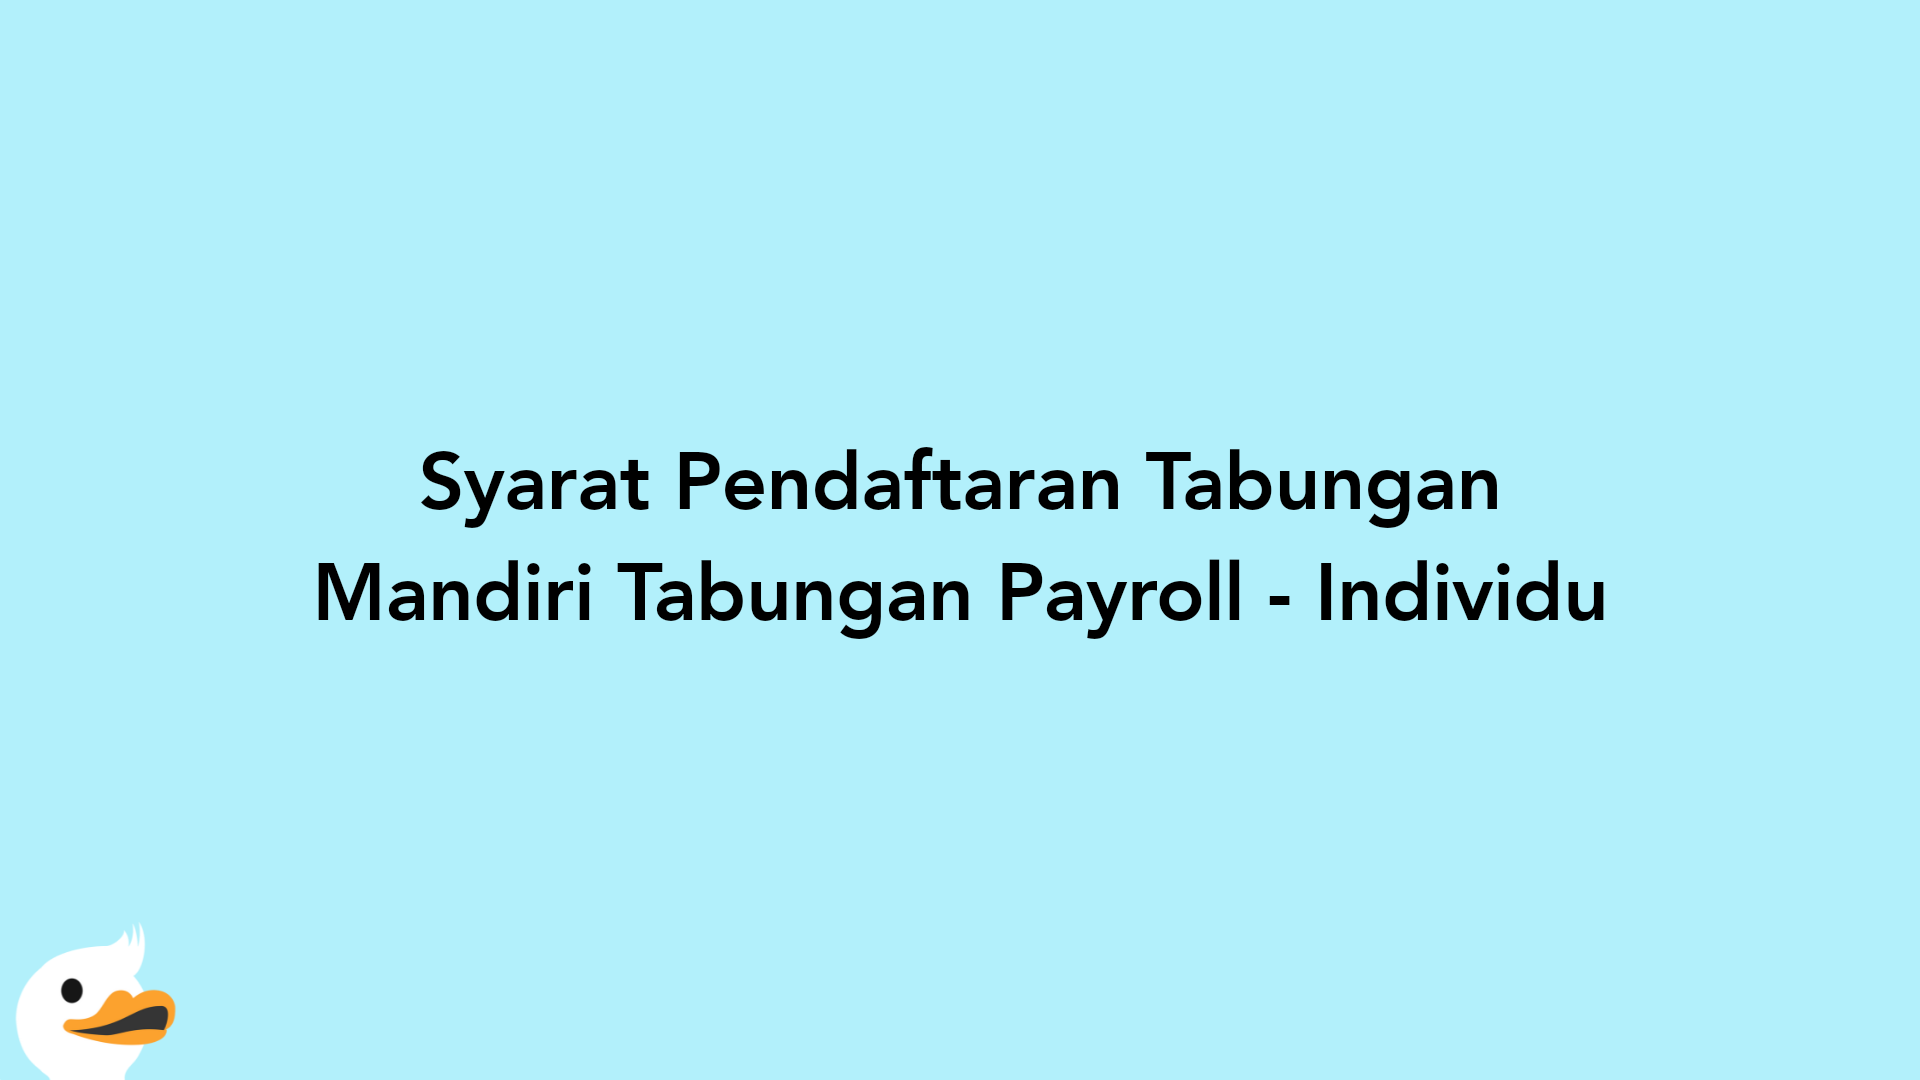 Syarat Pendaftaran Tabungan Mandiri Tabungan Payroll - Individu